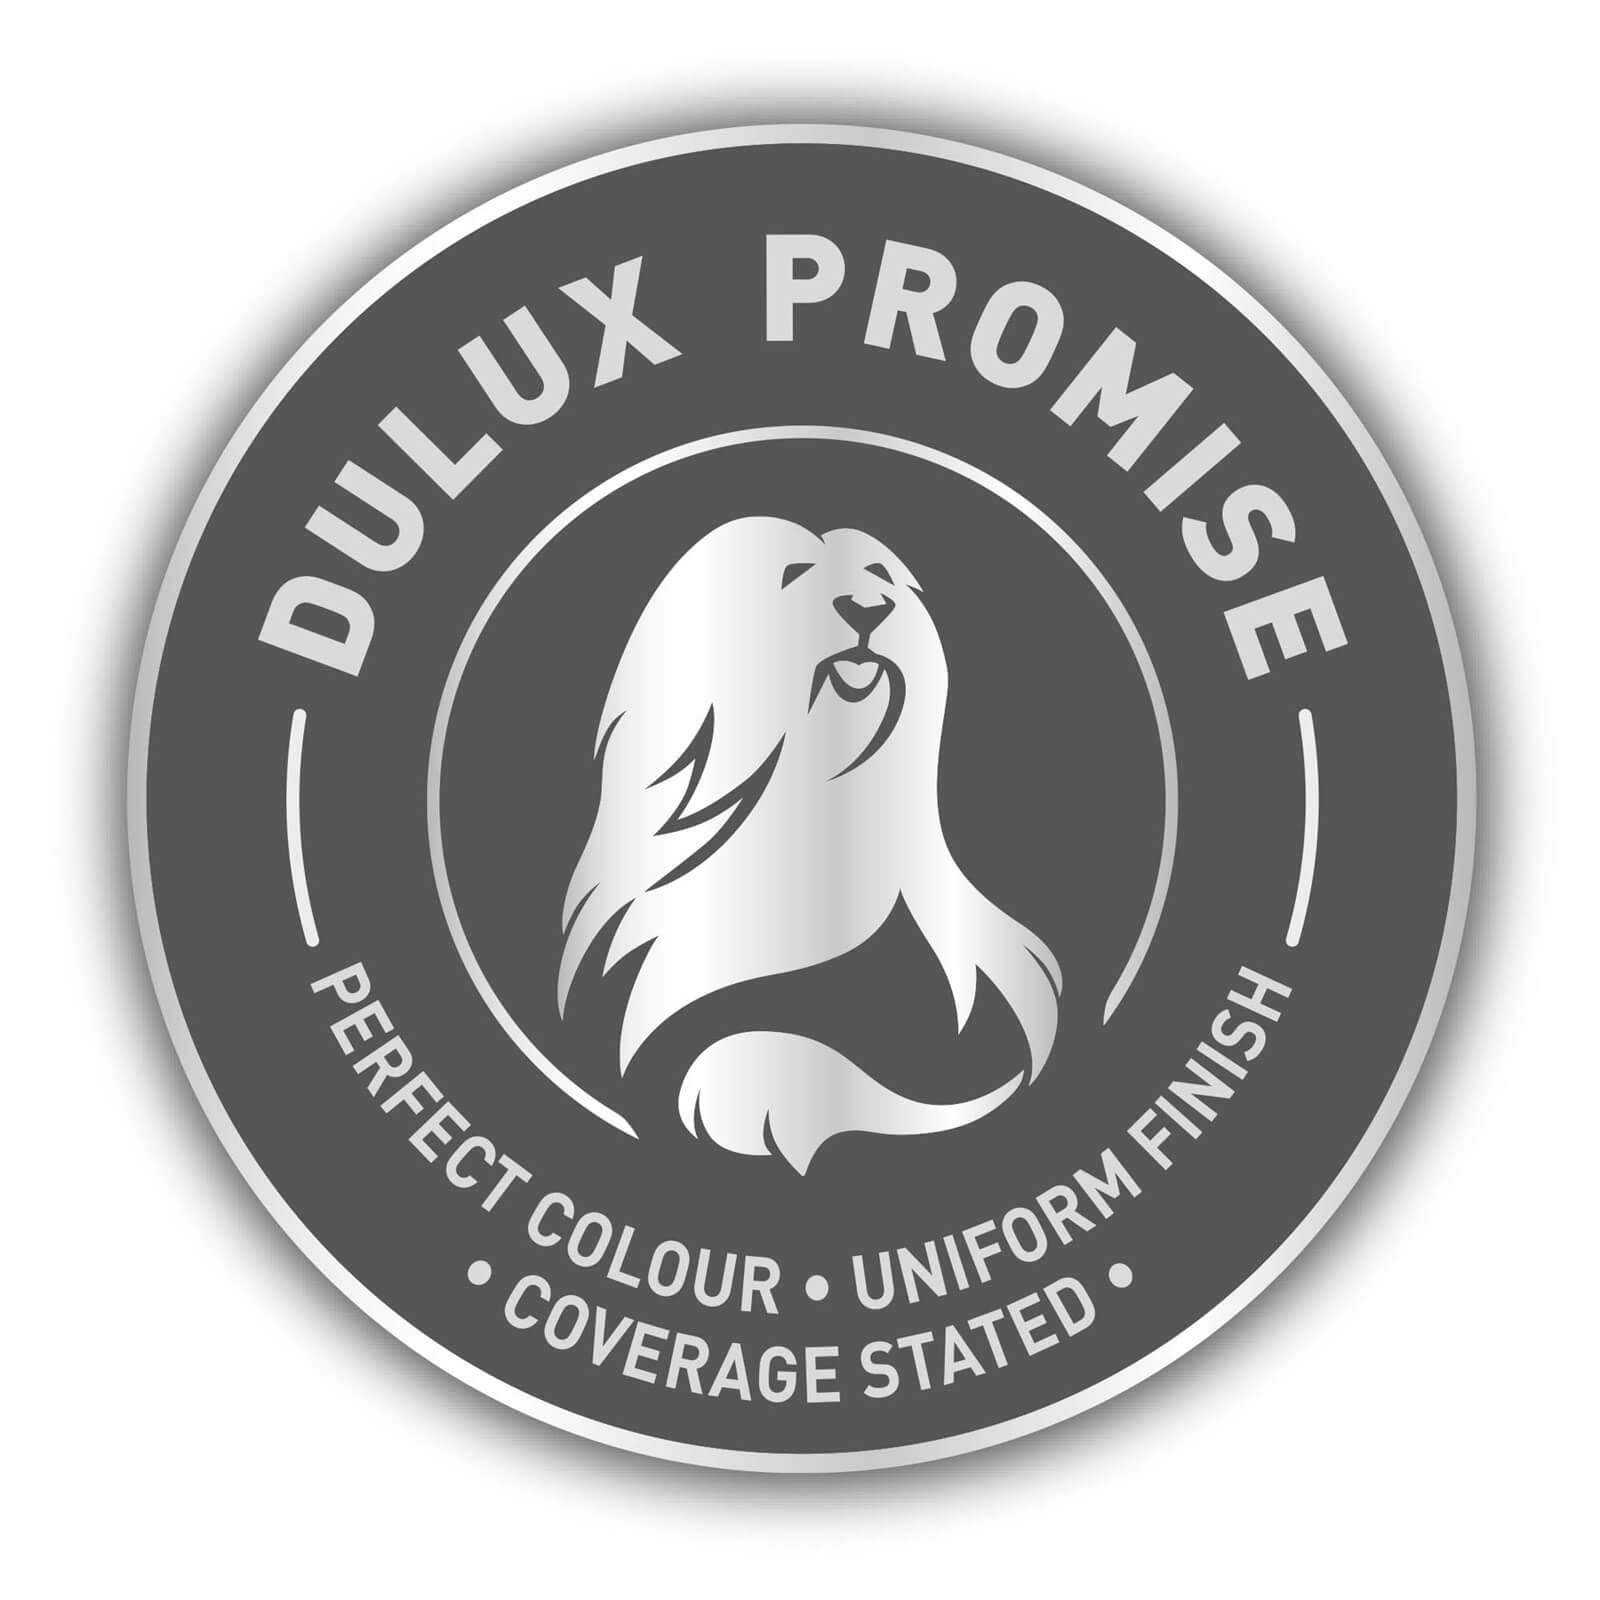 Dulux Easycare Washable & Tough Matt Paint Mint Macaroon - 2.5L